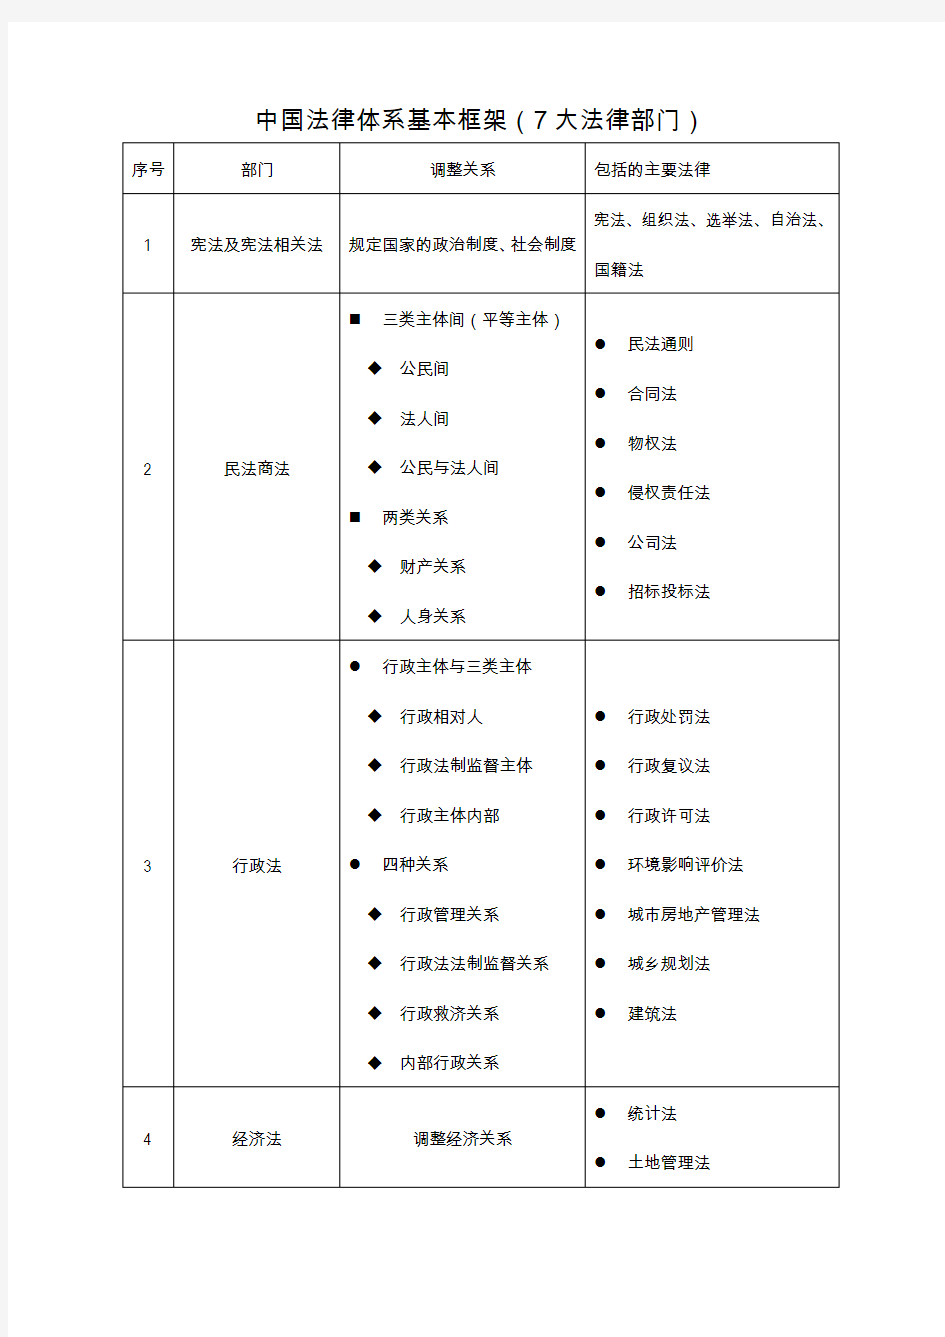 中国法律体系基本框架(7大法律部门)